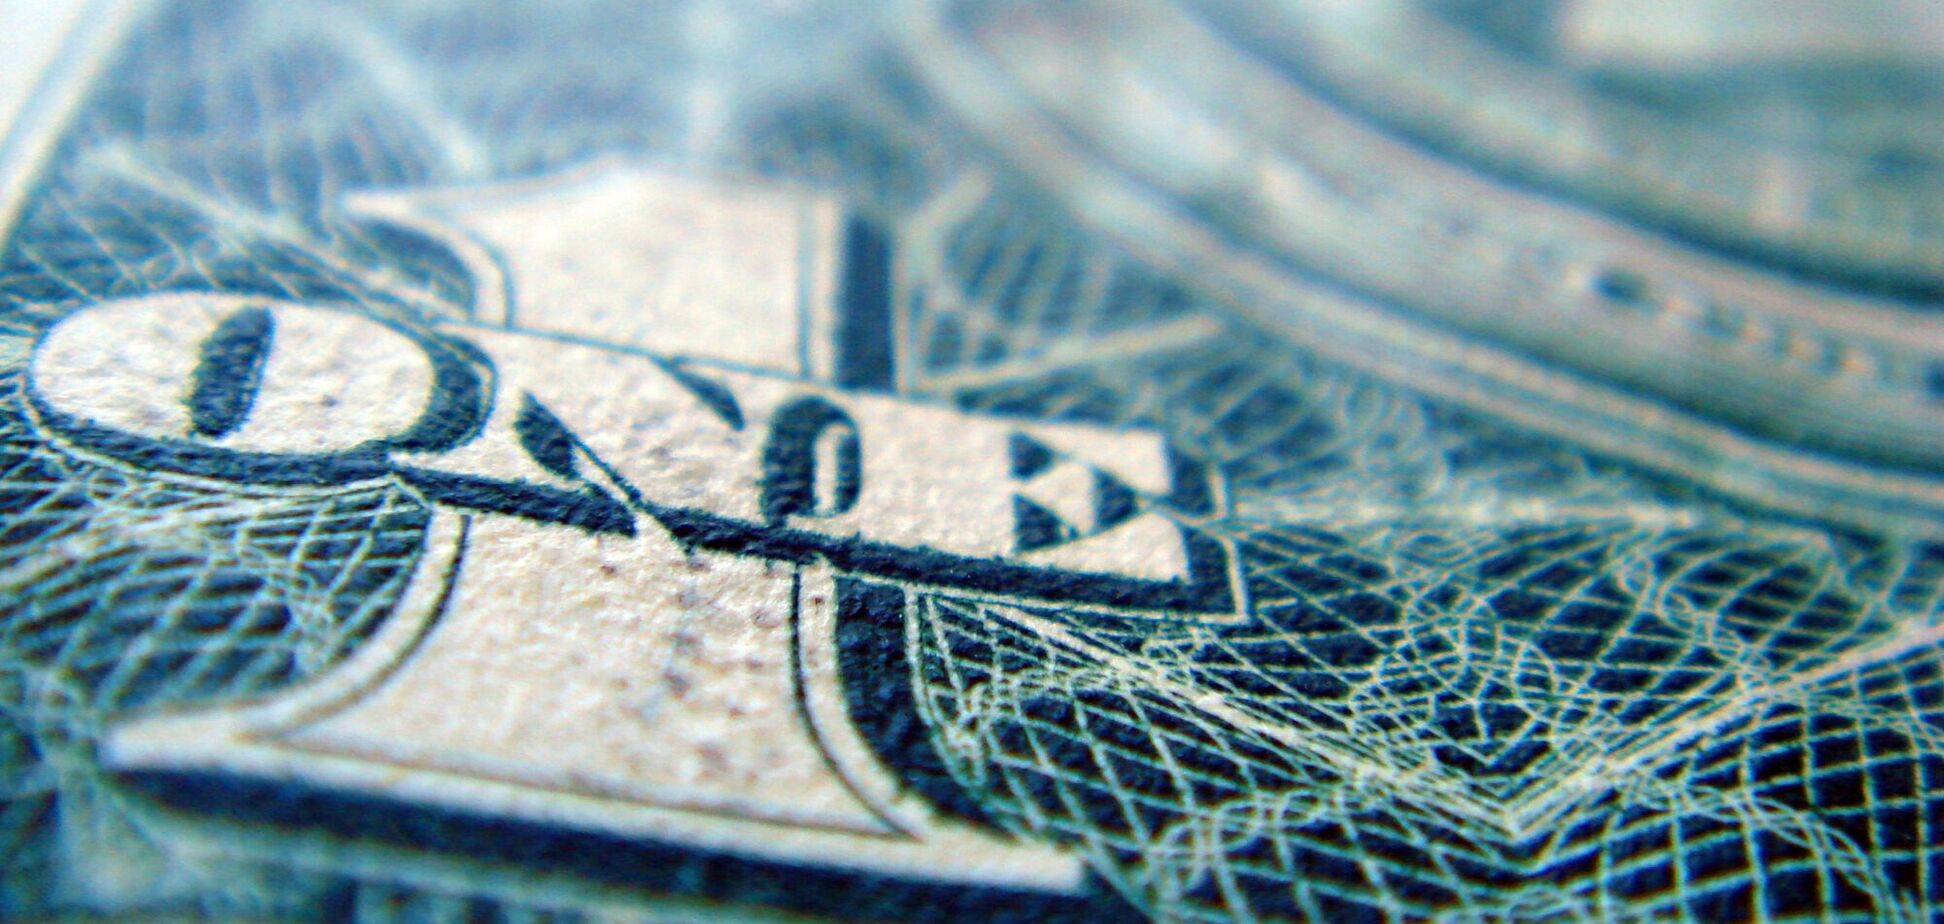 Обменники готовятся существенно переписать курс доллара уже в ближайшие дни